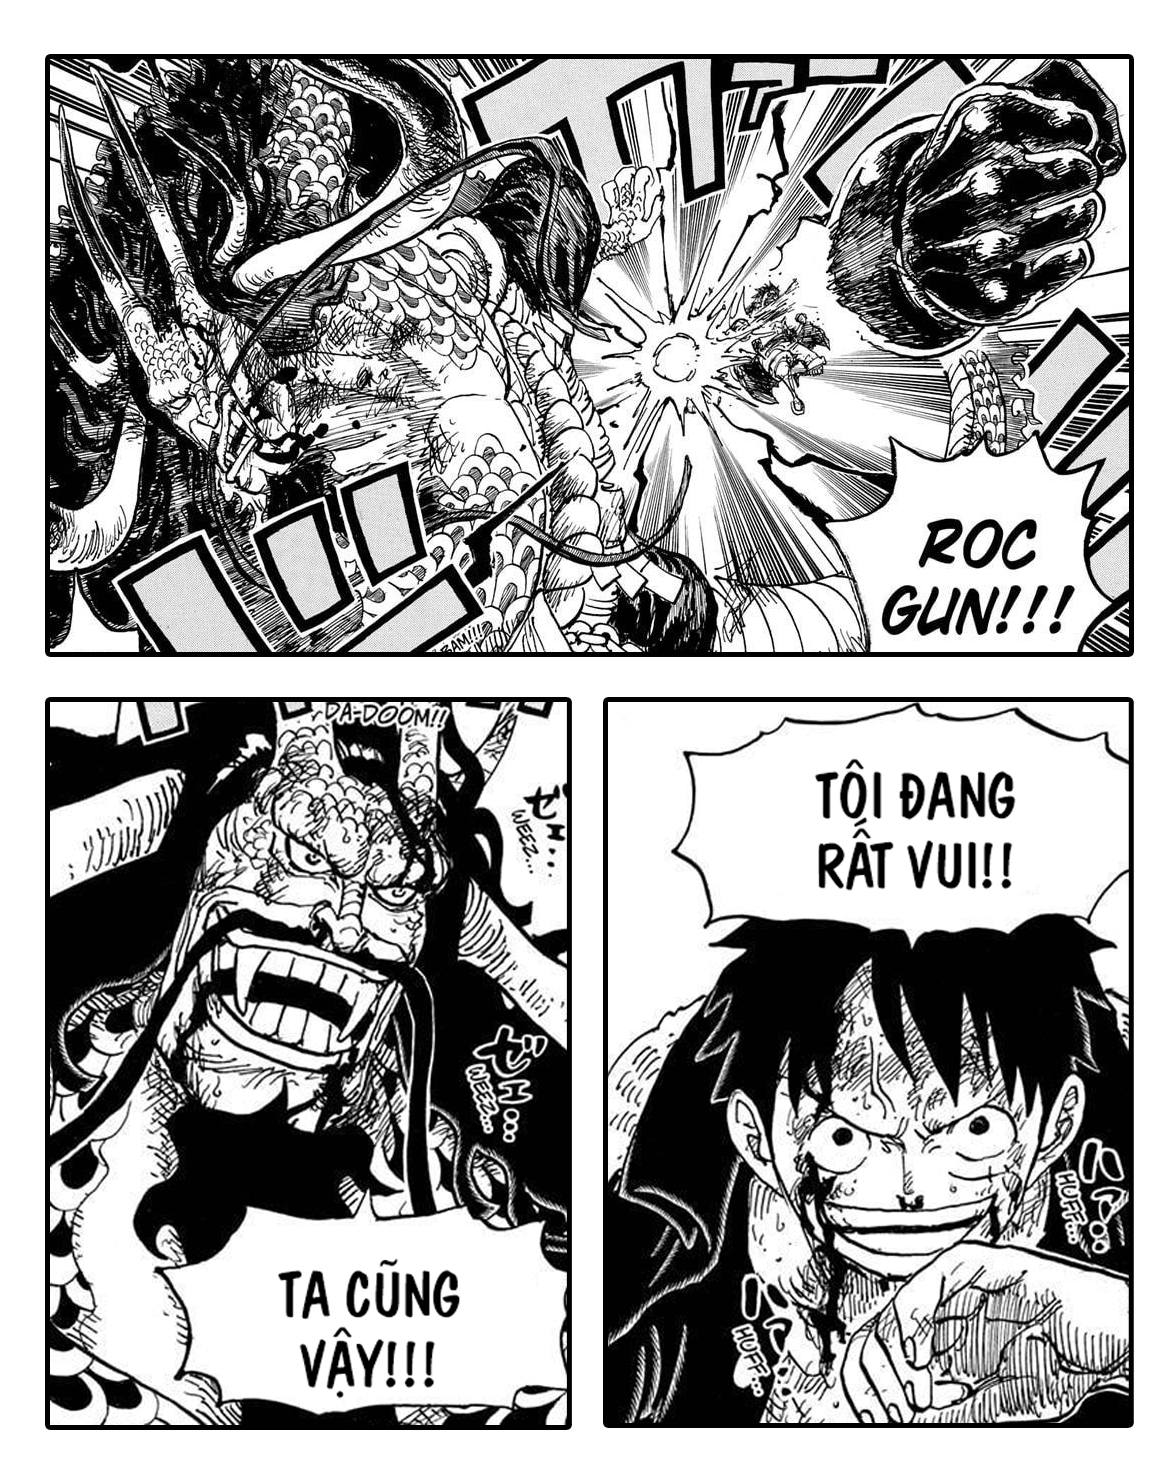 Luffy đấm Kaido: Một hình ảnh đáng kinh ngạc không thể bỏ qua, Luffy đấm Kaido trong One Piece. Đây là một khoảnh khắc cực kỳ hồi hộp và đầy cảm xúc.